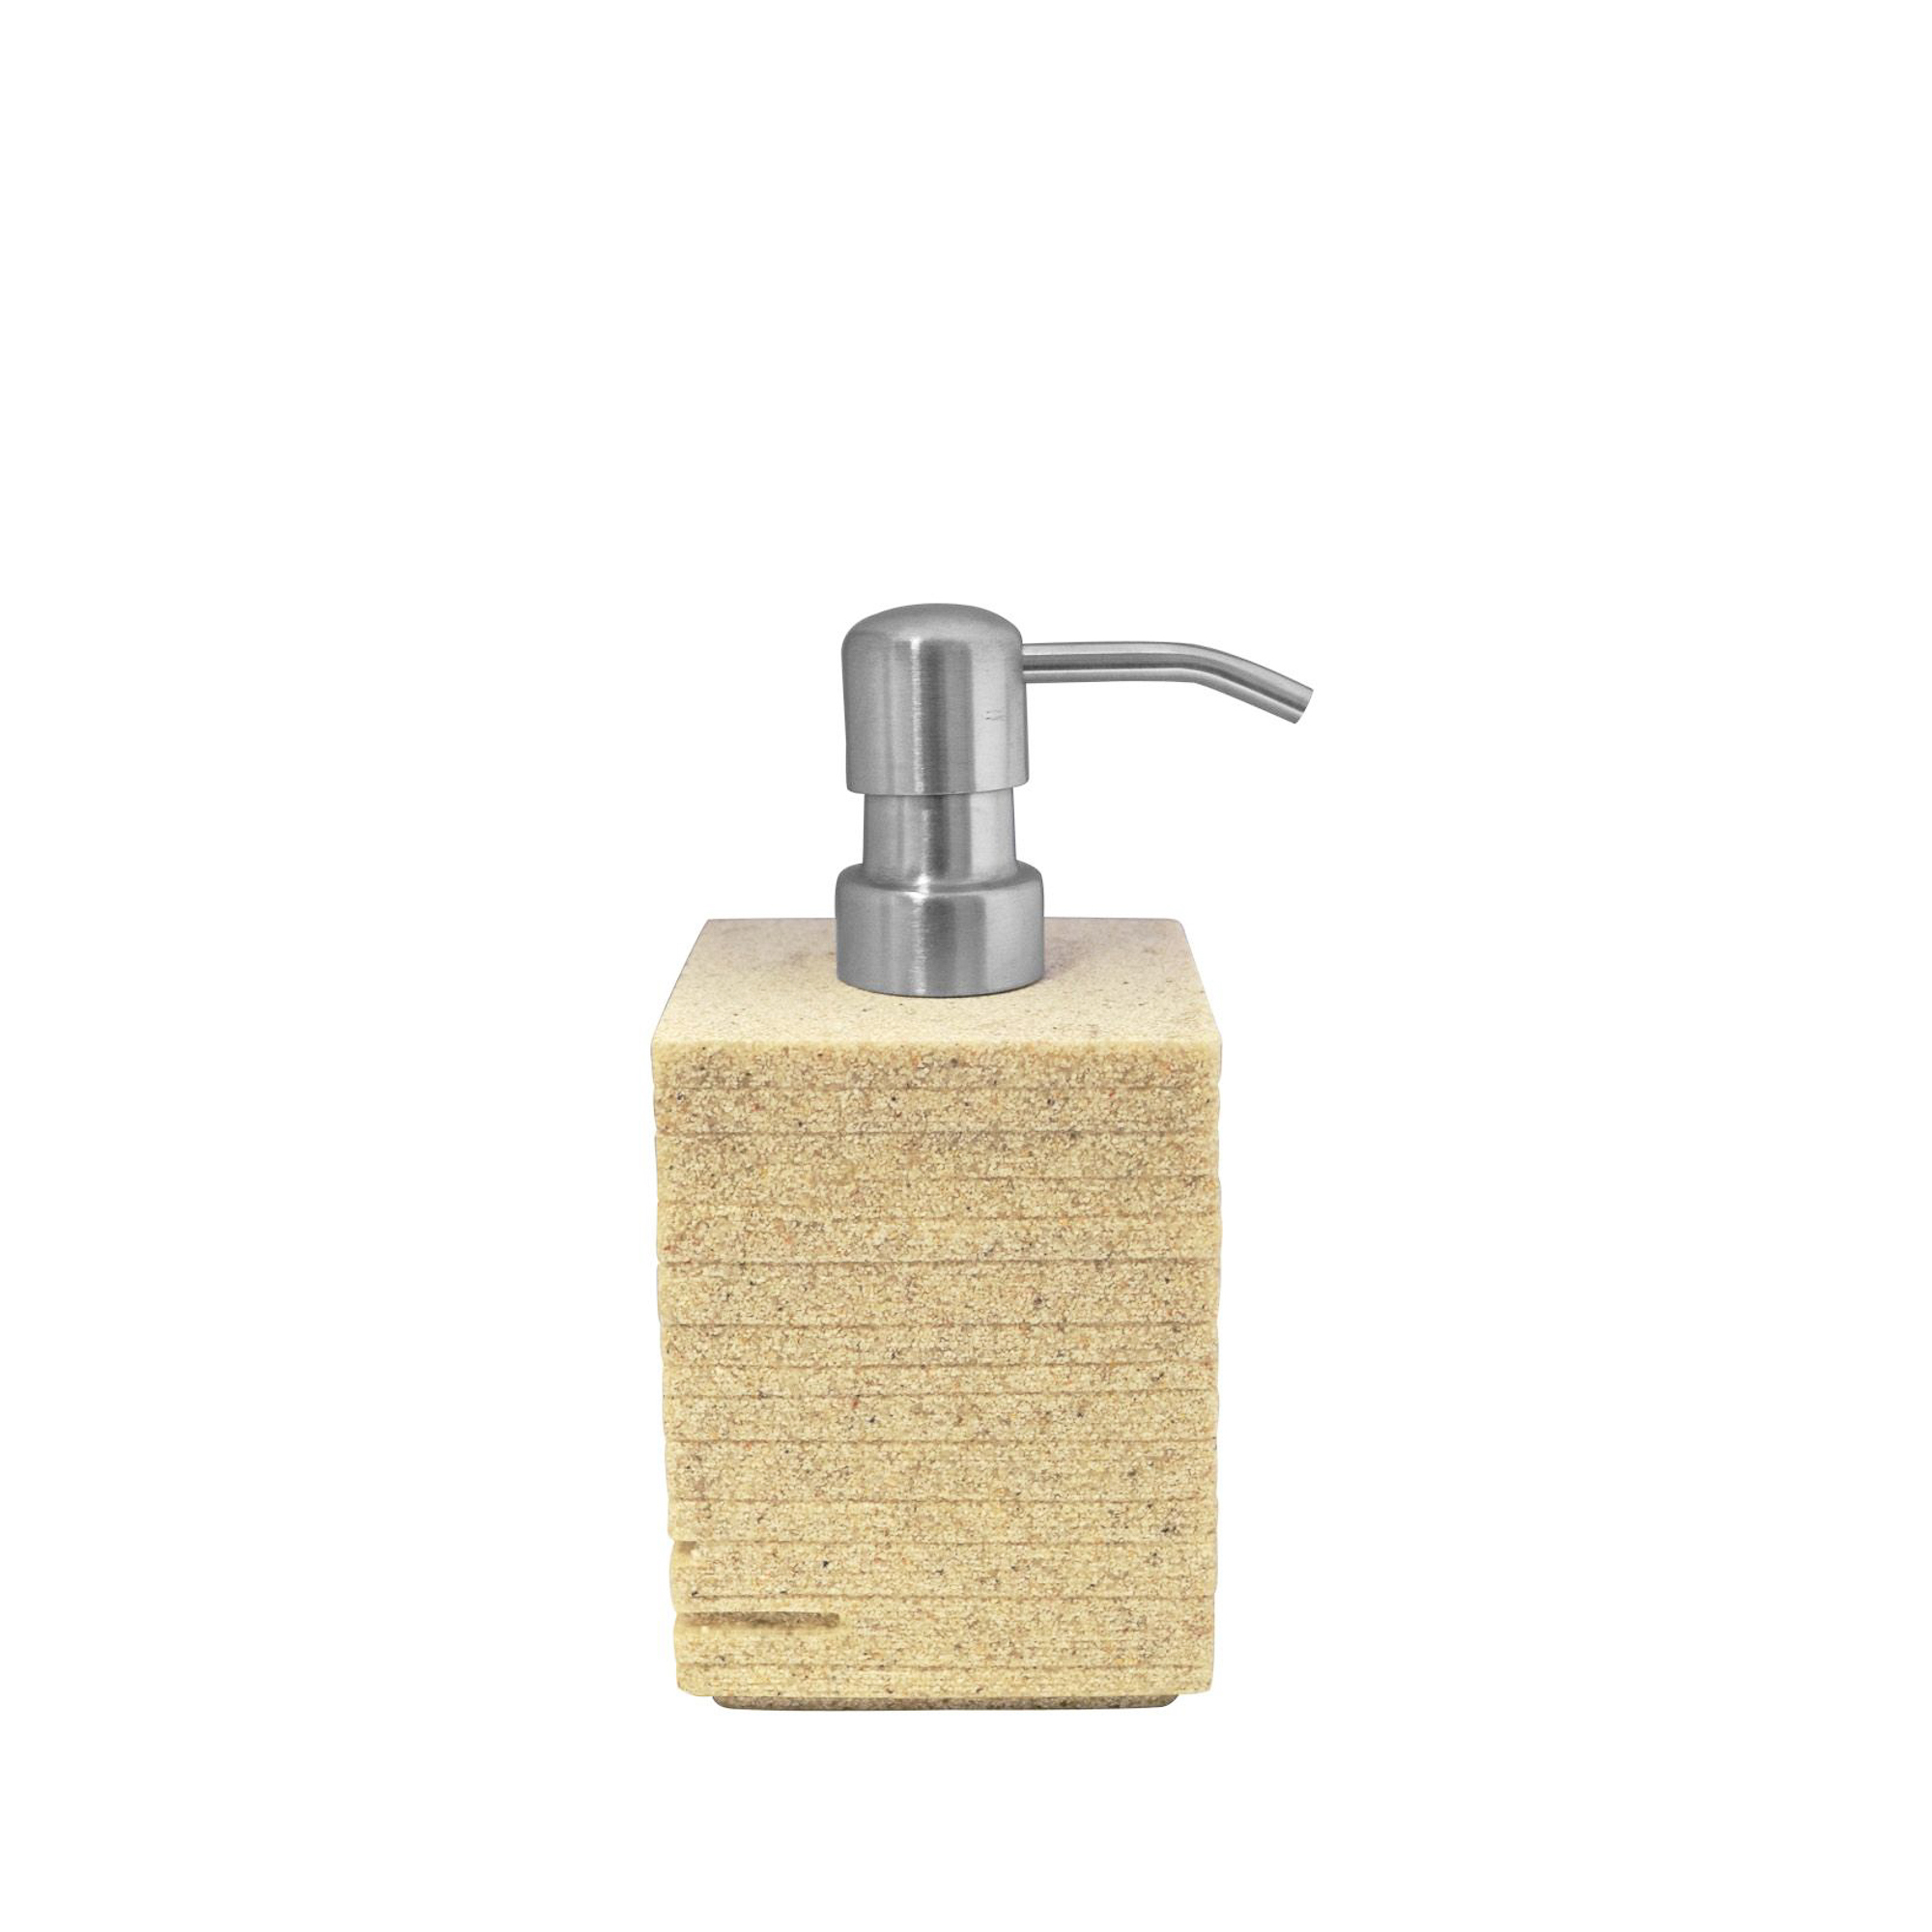 Дозатор для жидкого мыла Brick бежевый Ridder дозатор для жидкого мыла ridder brick 22150510 черный